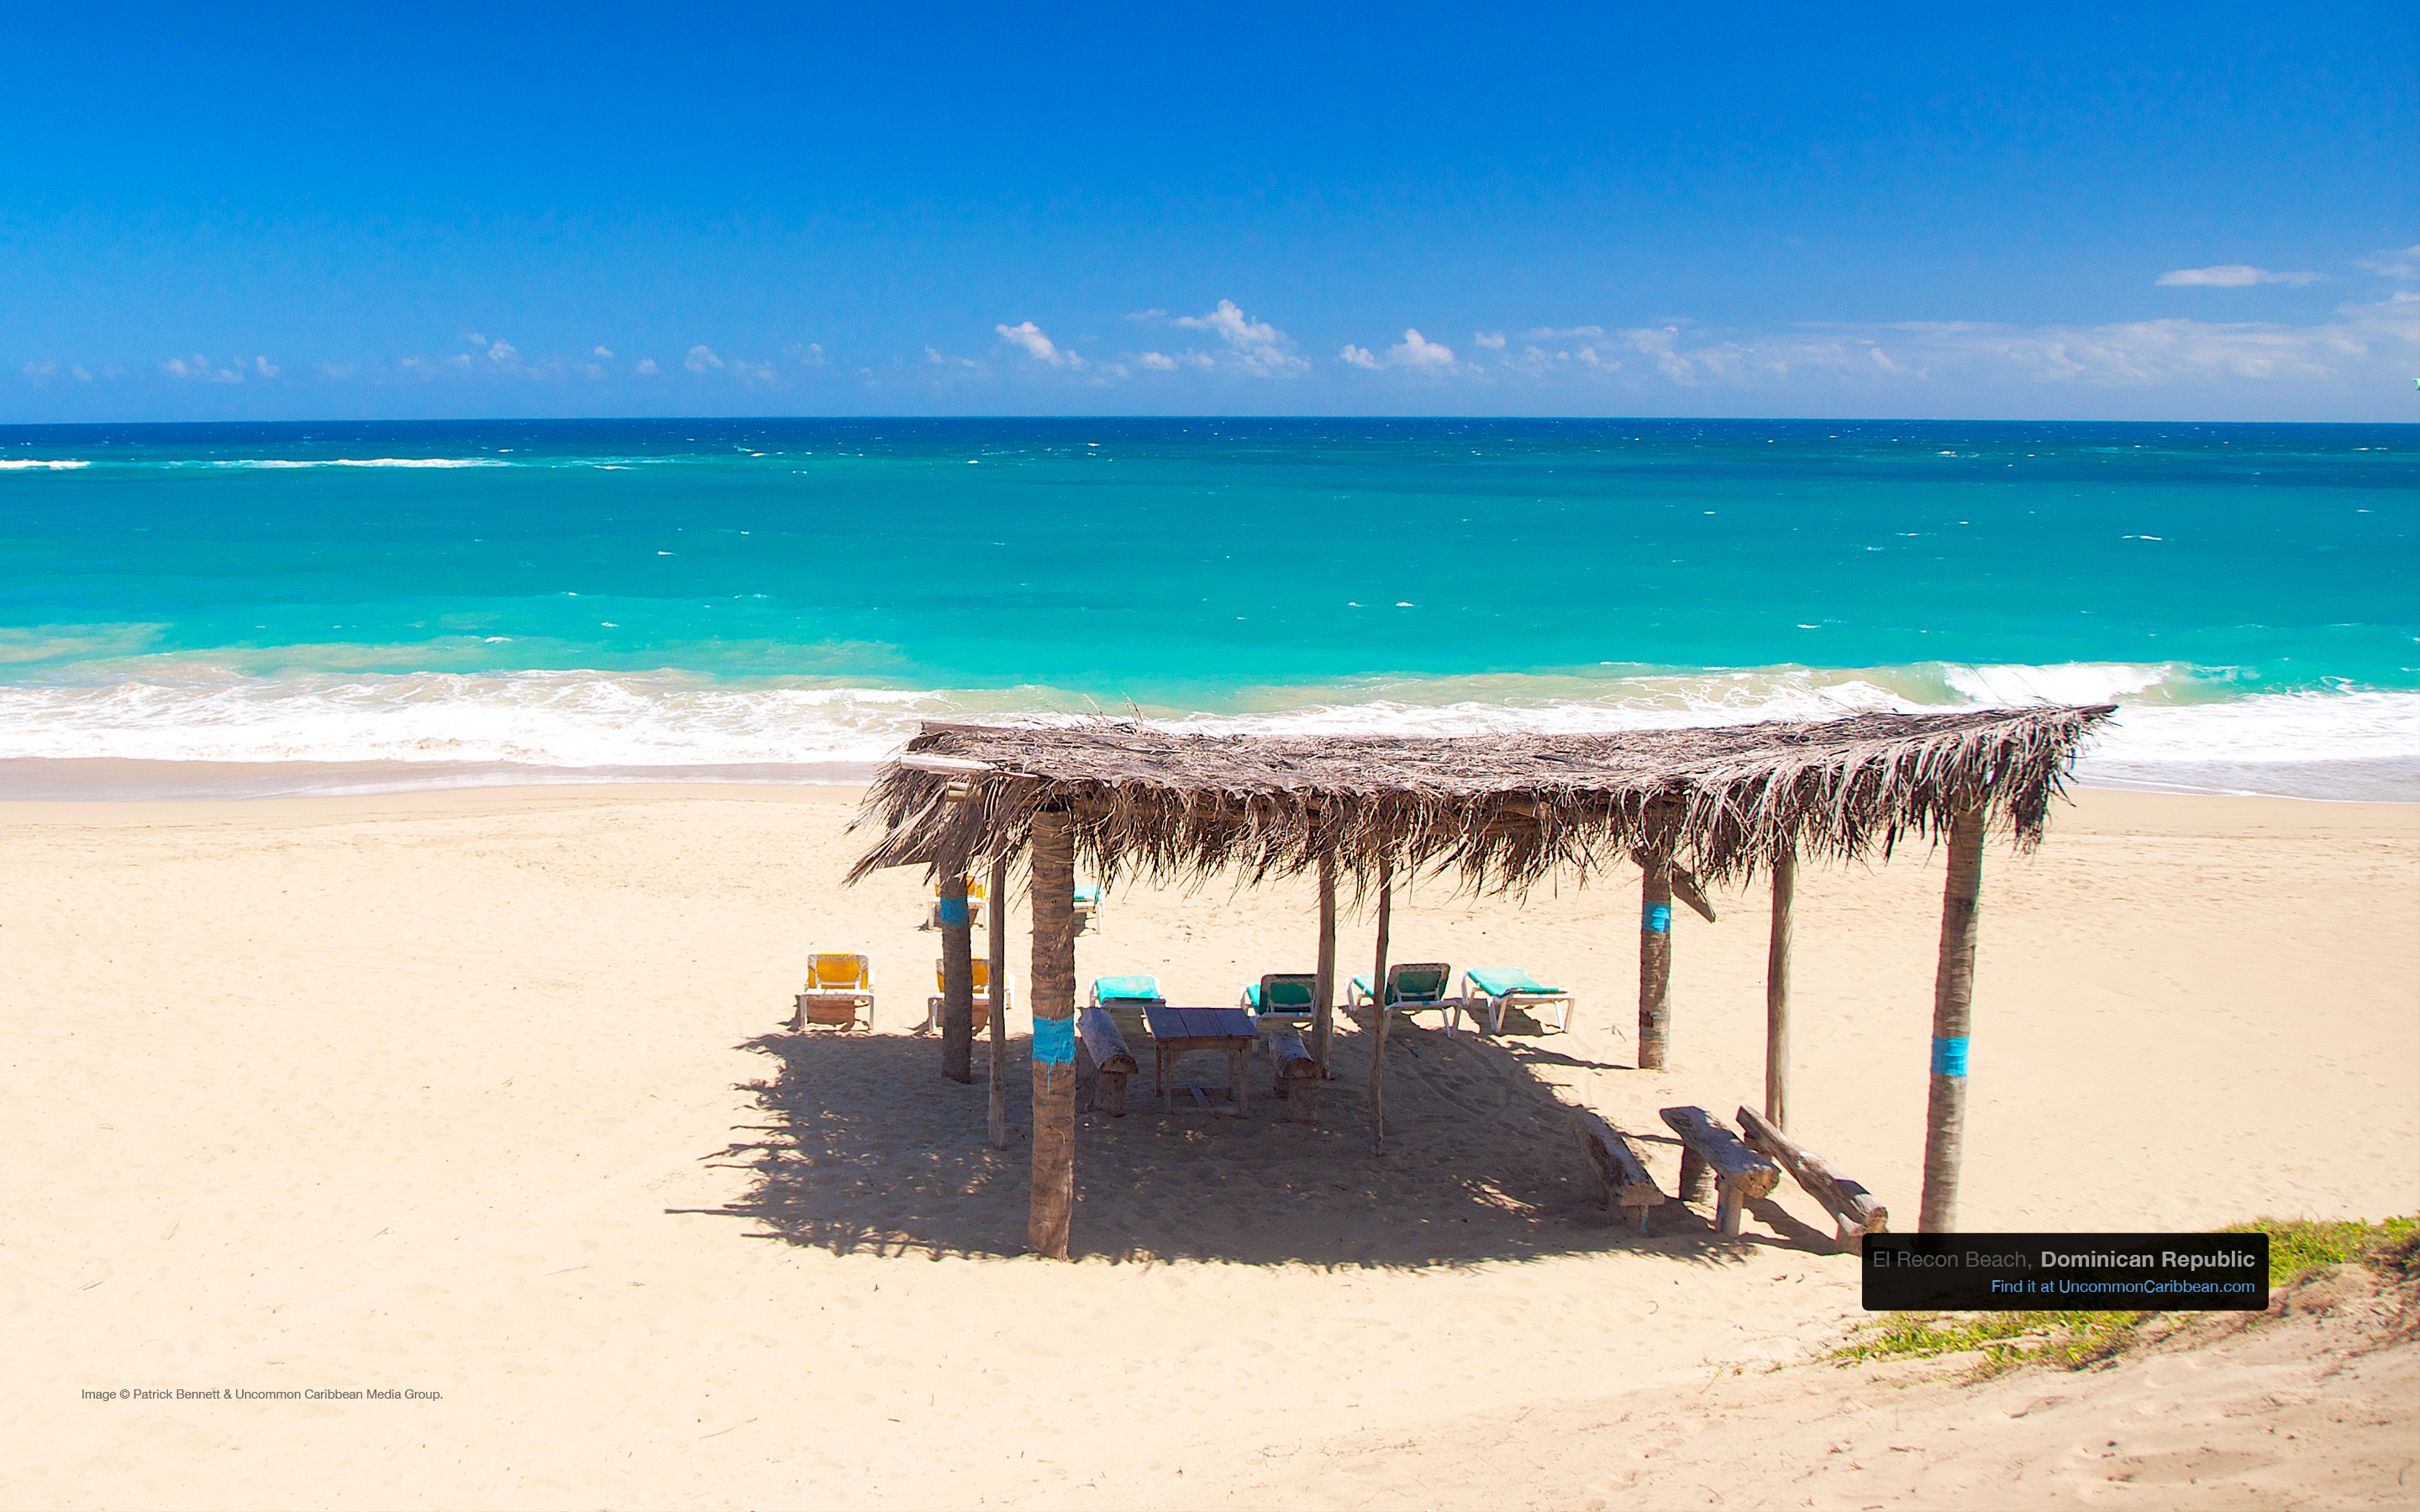 Barbados El Recon Beach, Cabarete, Dominican Republic